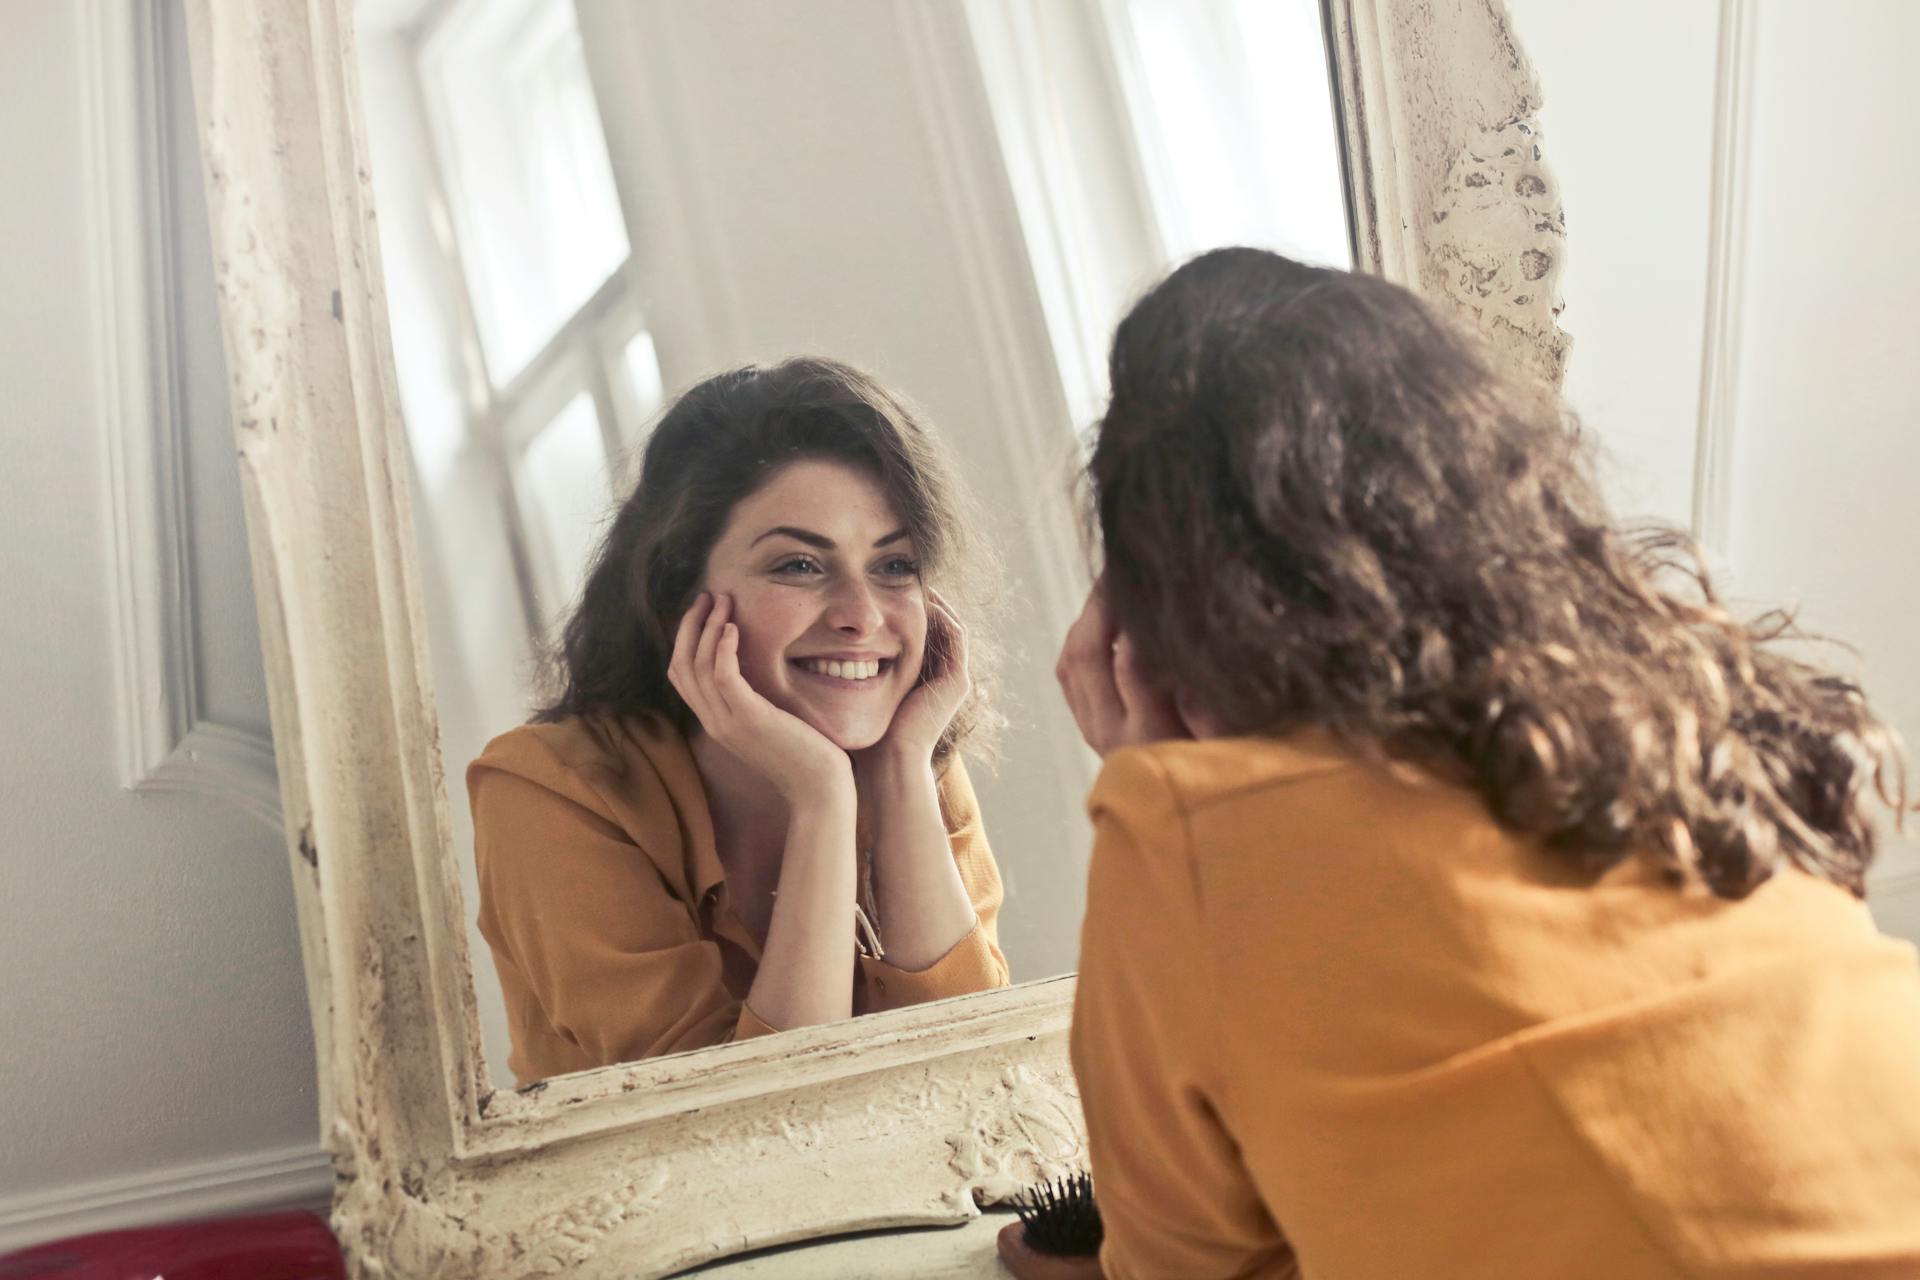 Eine lächelnde Frau, die ihr Spiegelbild betrachtet | Quelle: Pexels